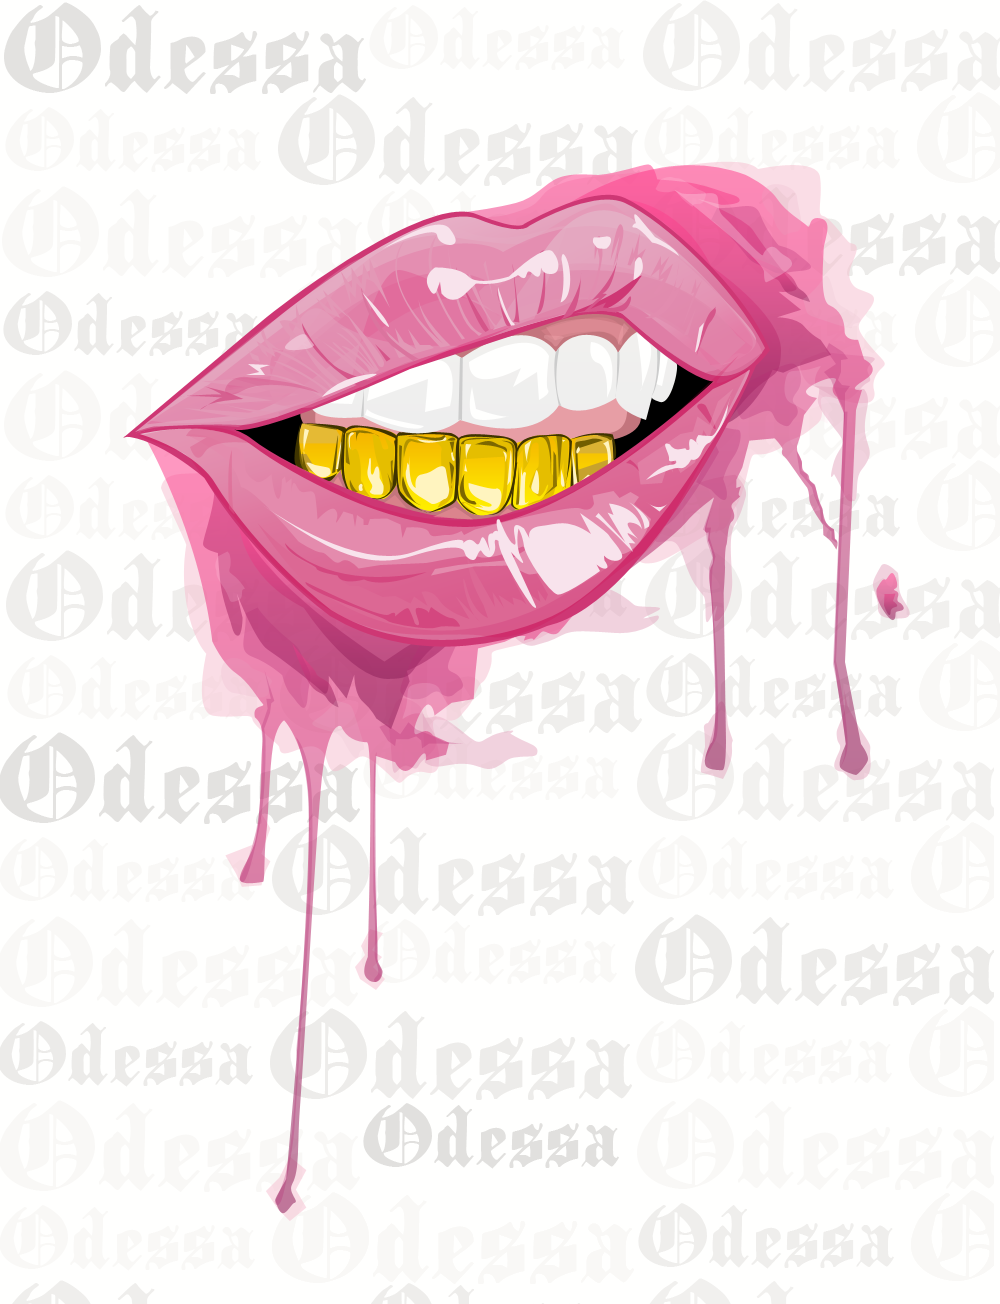 Toon Lips Odessa Buggs Pop Art Wallpaper Badass